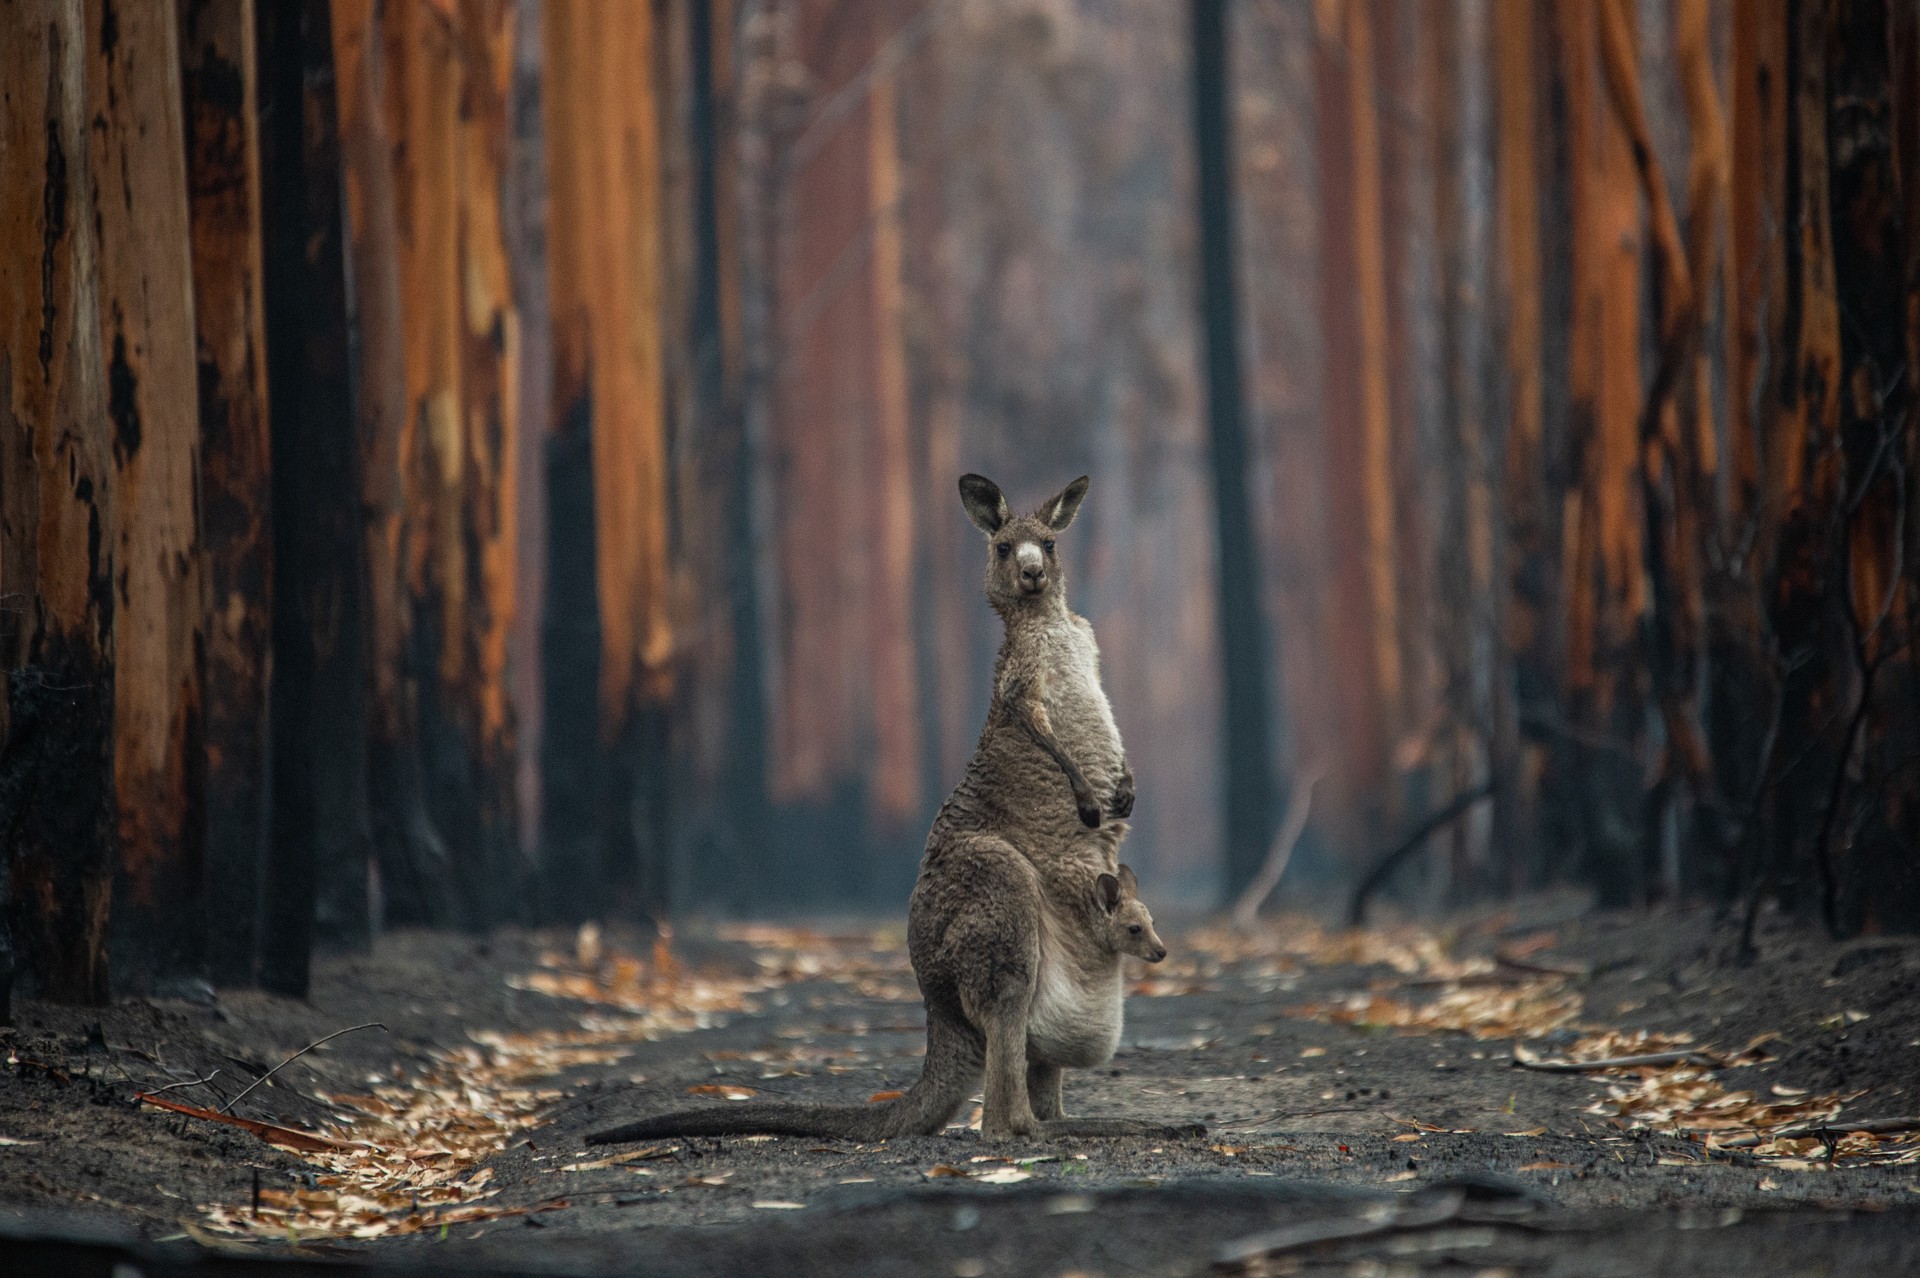 1 место в категории Человек и природа, 2020. Надежда в сгоревшем лесу. Австралия. Автор Джо-Энн МакАртур